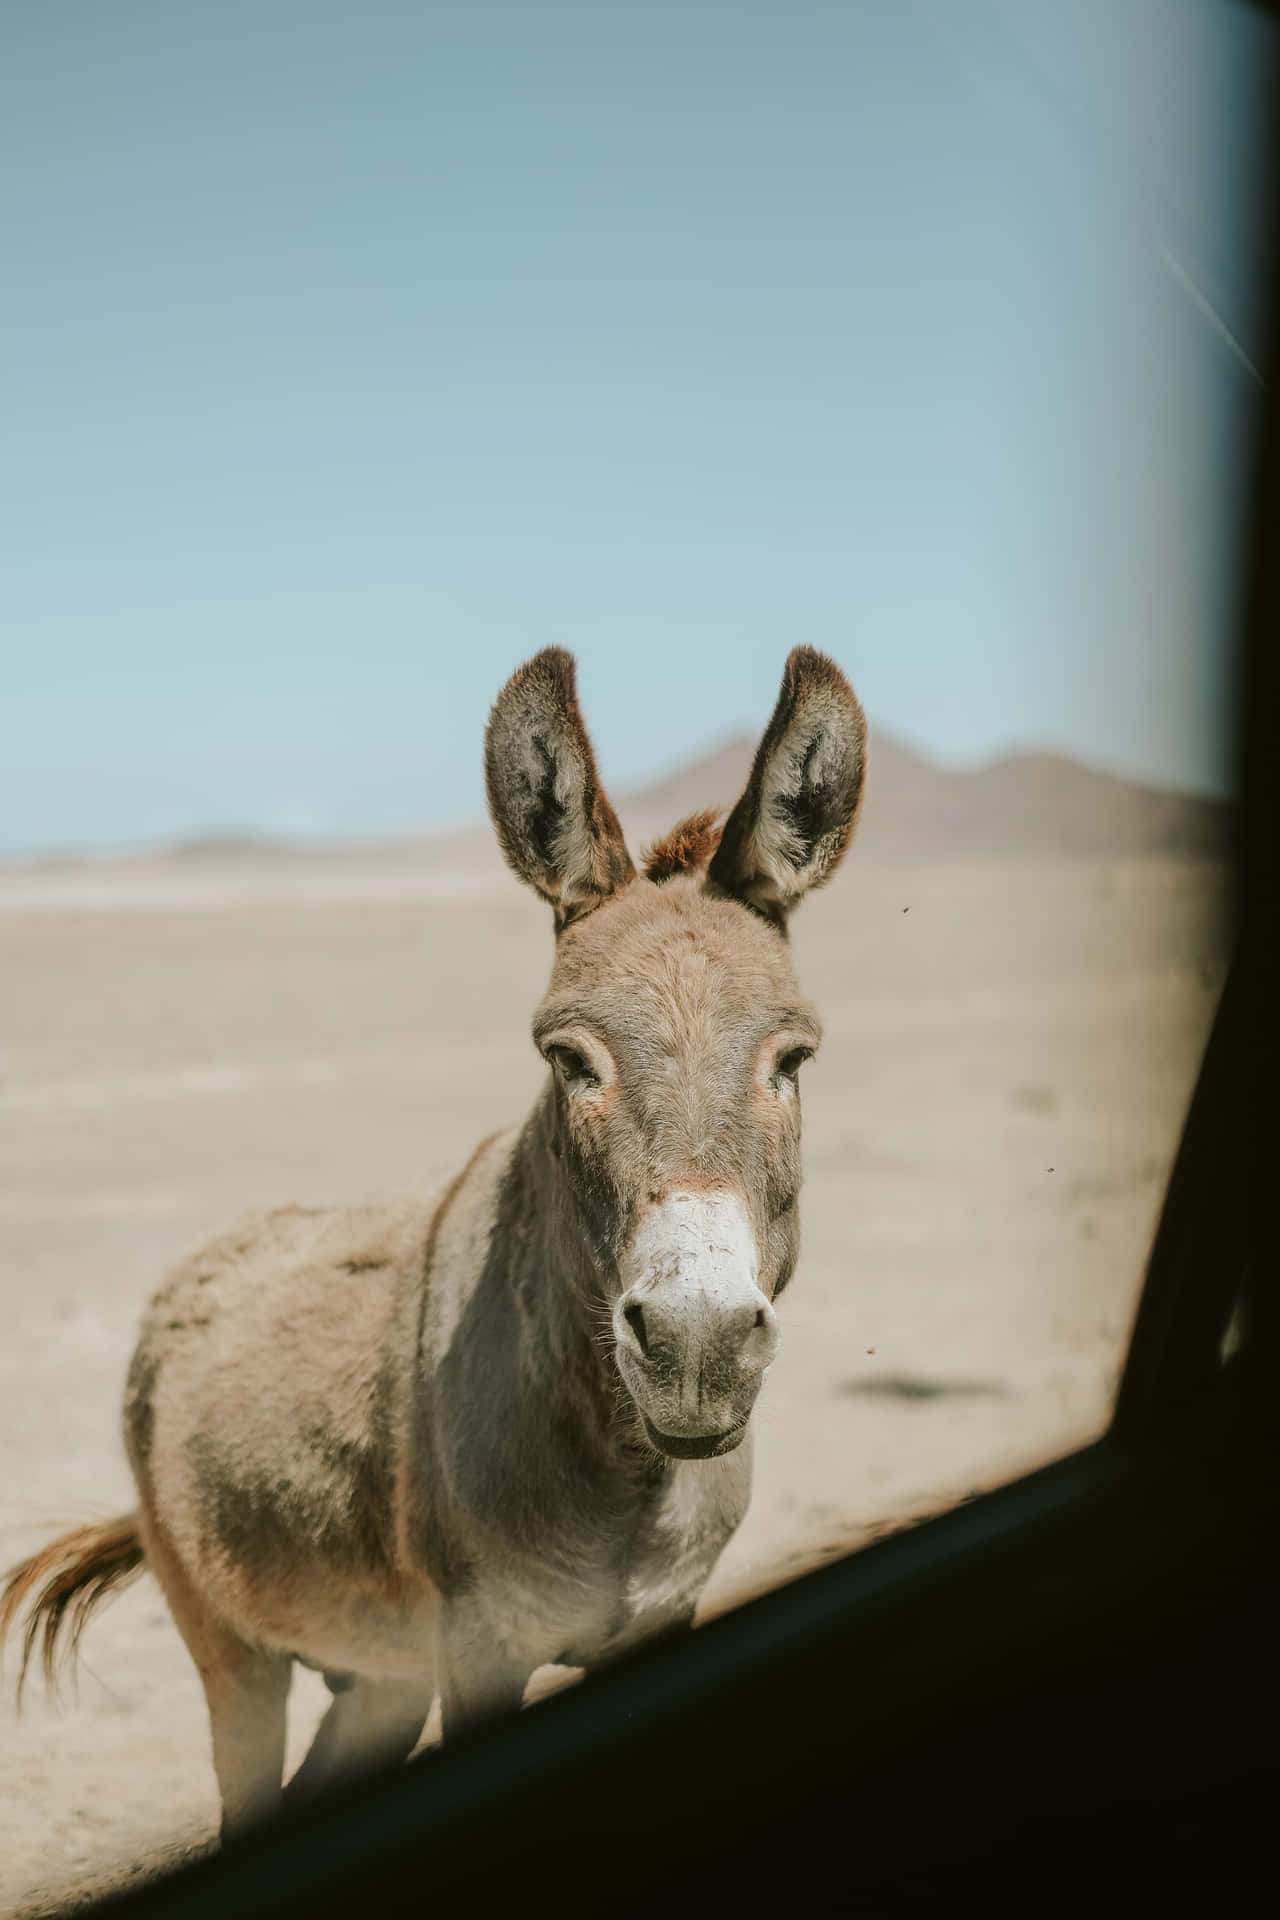 Donkey Background